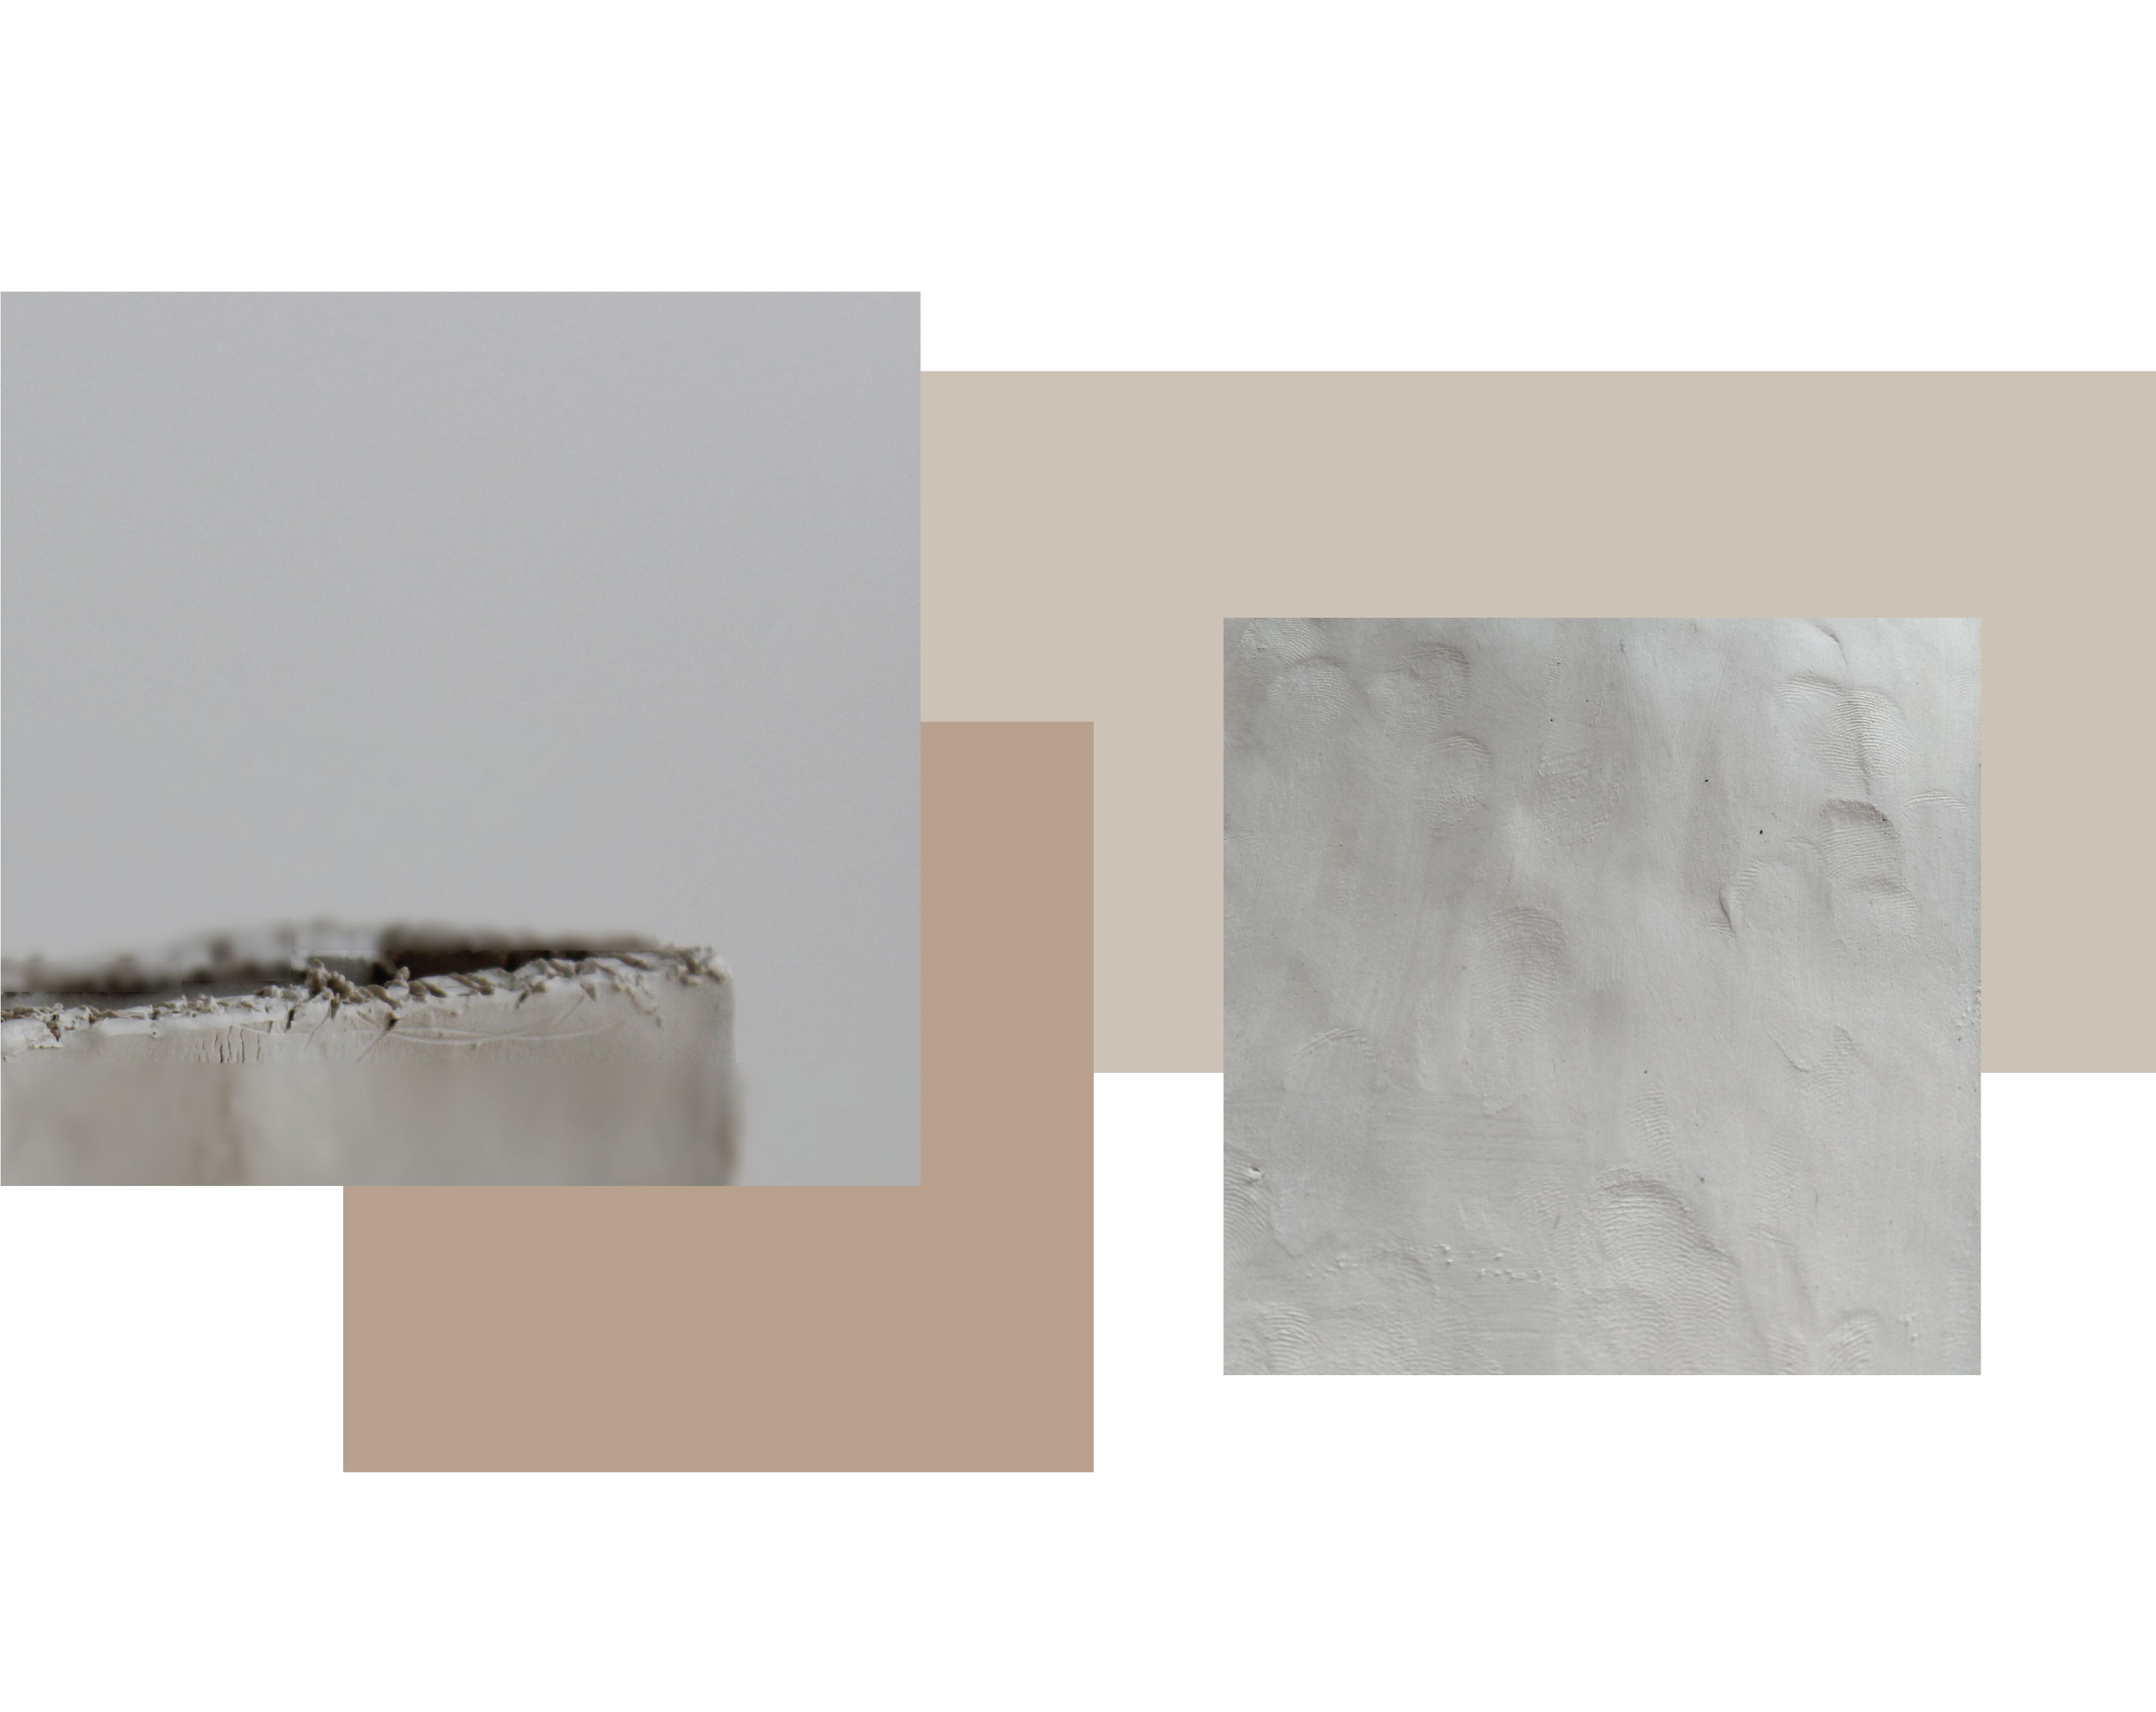  dwa zdjęcia. jeden pokazuje zbliżenie zarysowanej krawędzi gliny. Jeden pokazuje szczegóły na odciskach palców na mokrej powierzchni gliny kamionkowej.